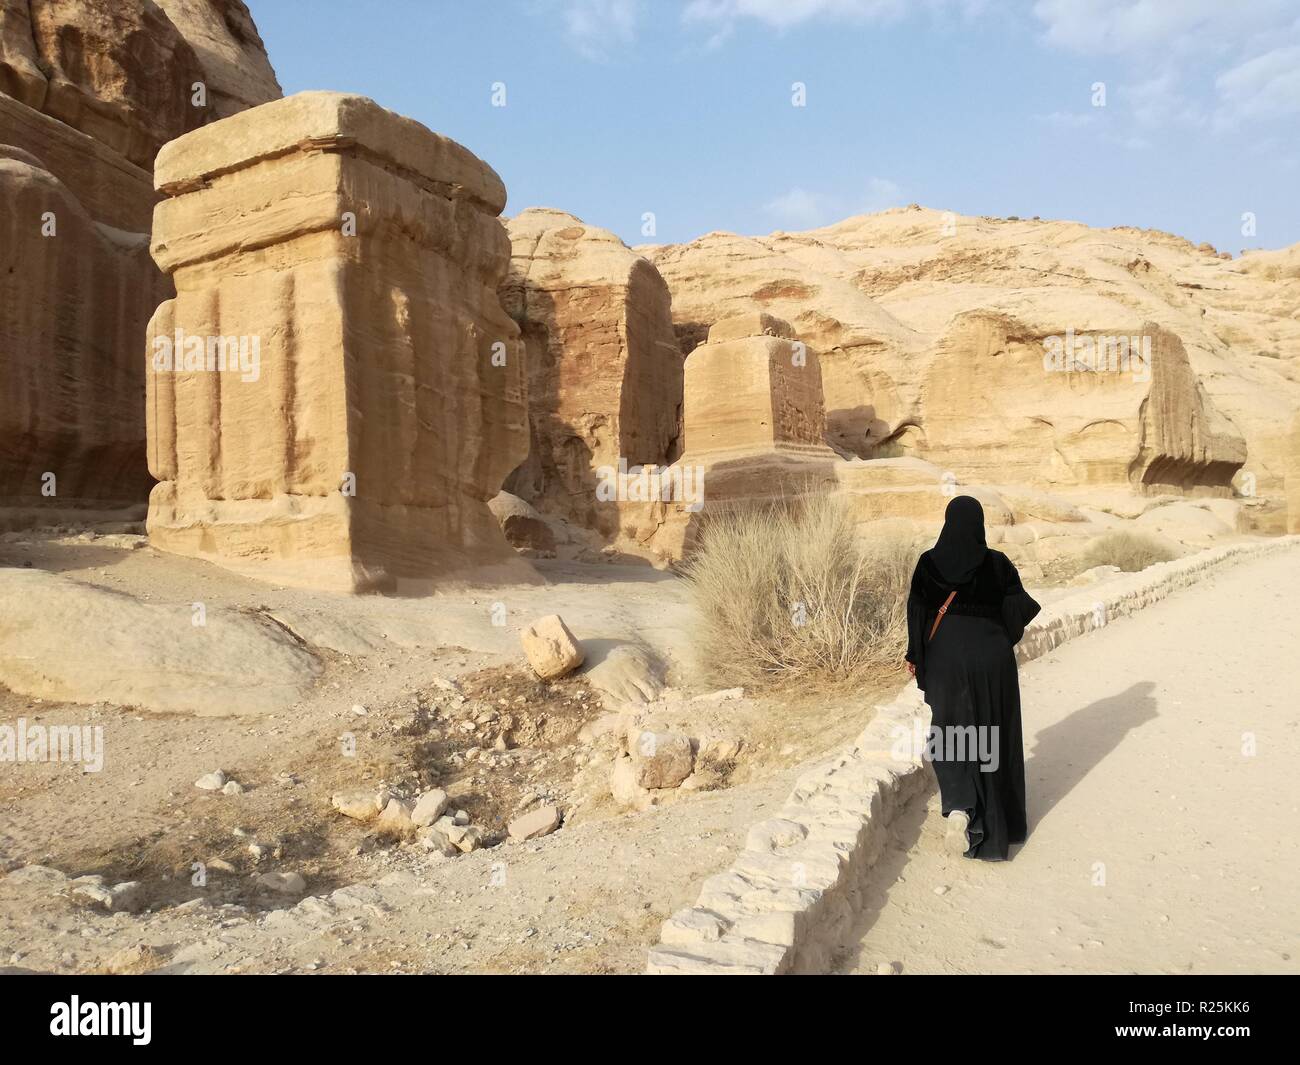 Petra, Jordan - October 19, 2018: An Arab woman walks past a sandstone temple in the historic city of Petra, Jordan. Stock Photo